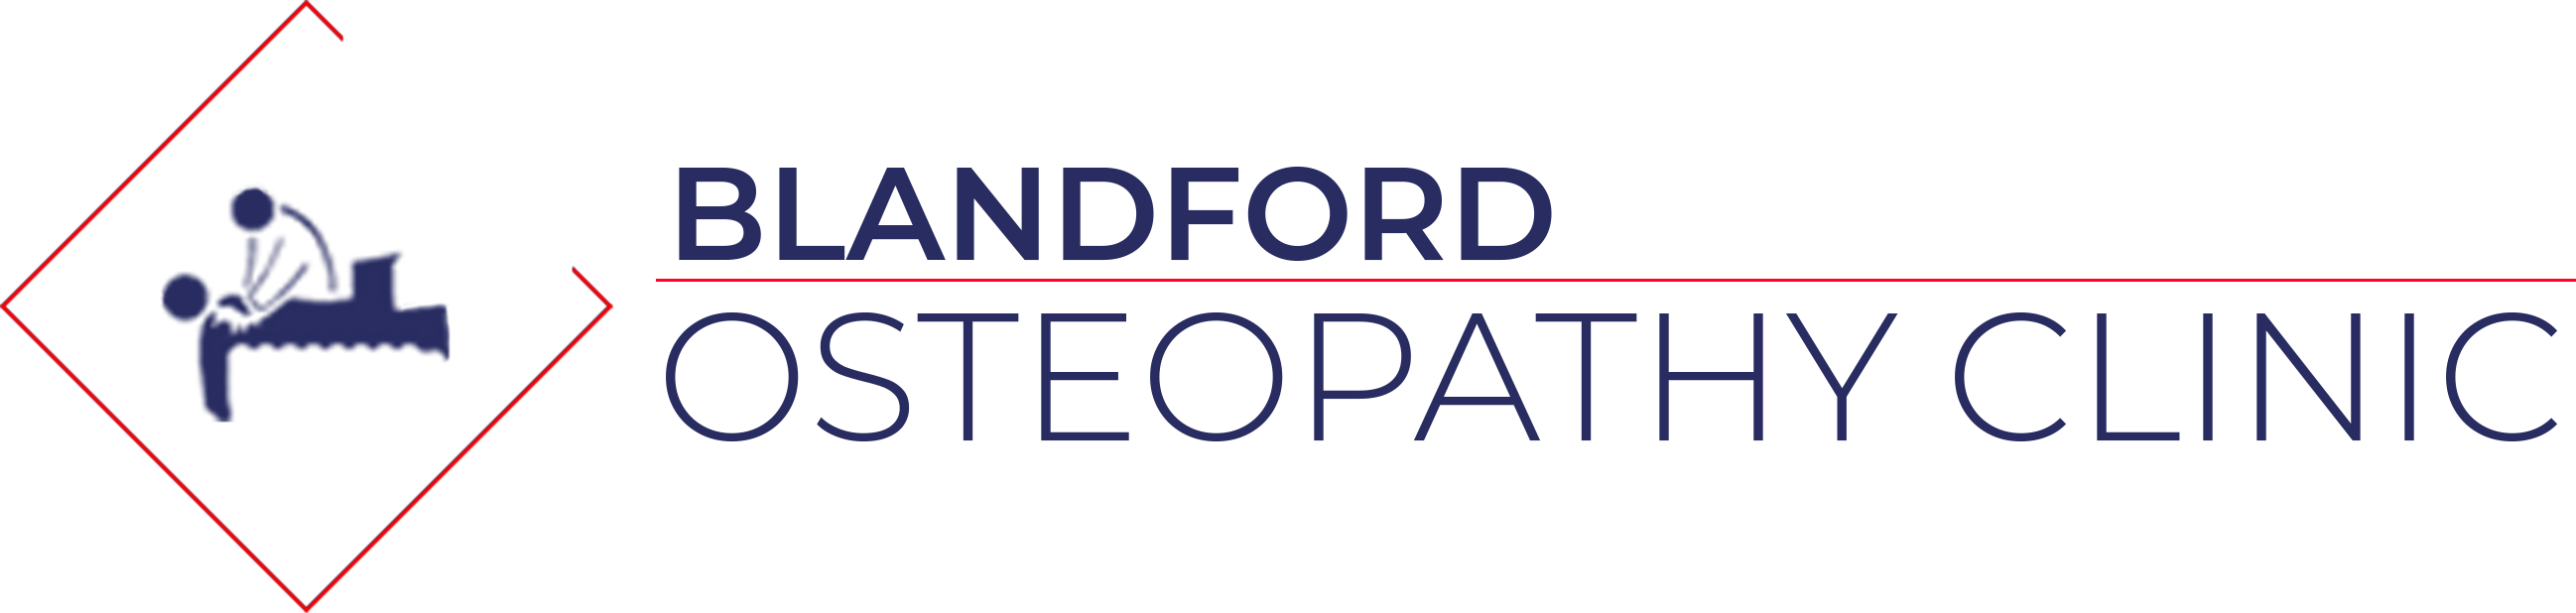 Blandford Osteopath Clinic